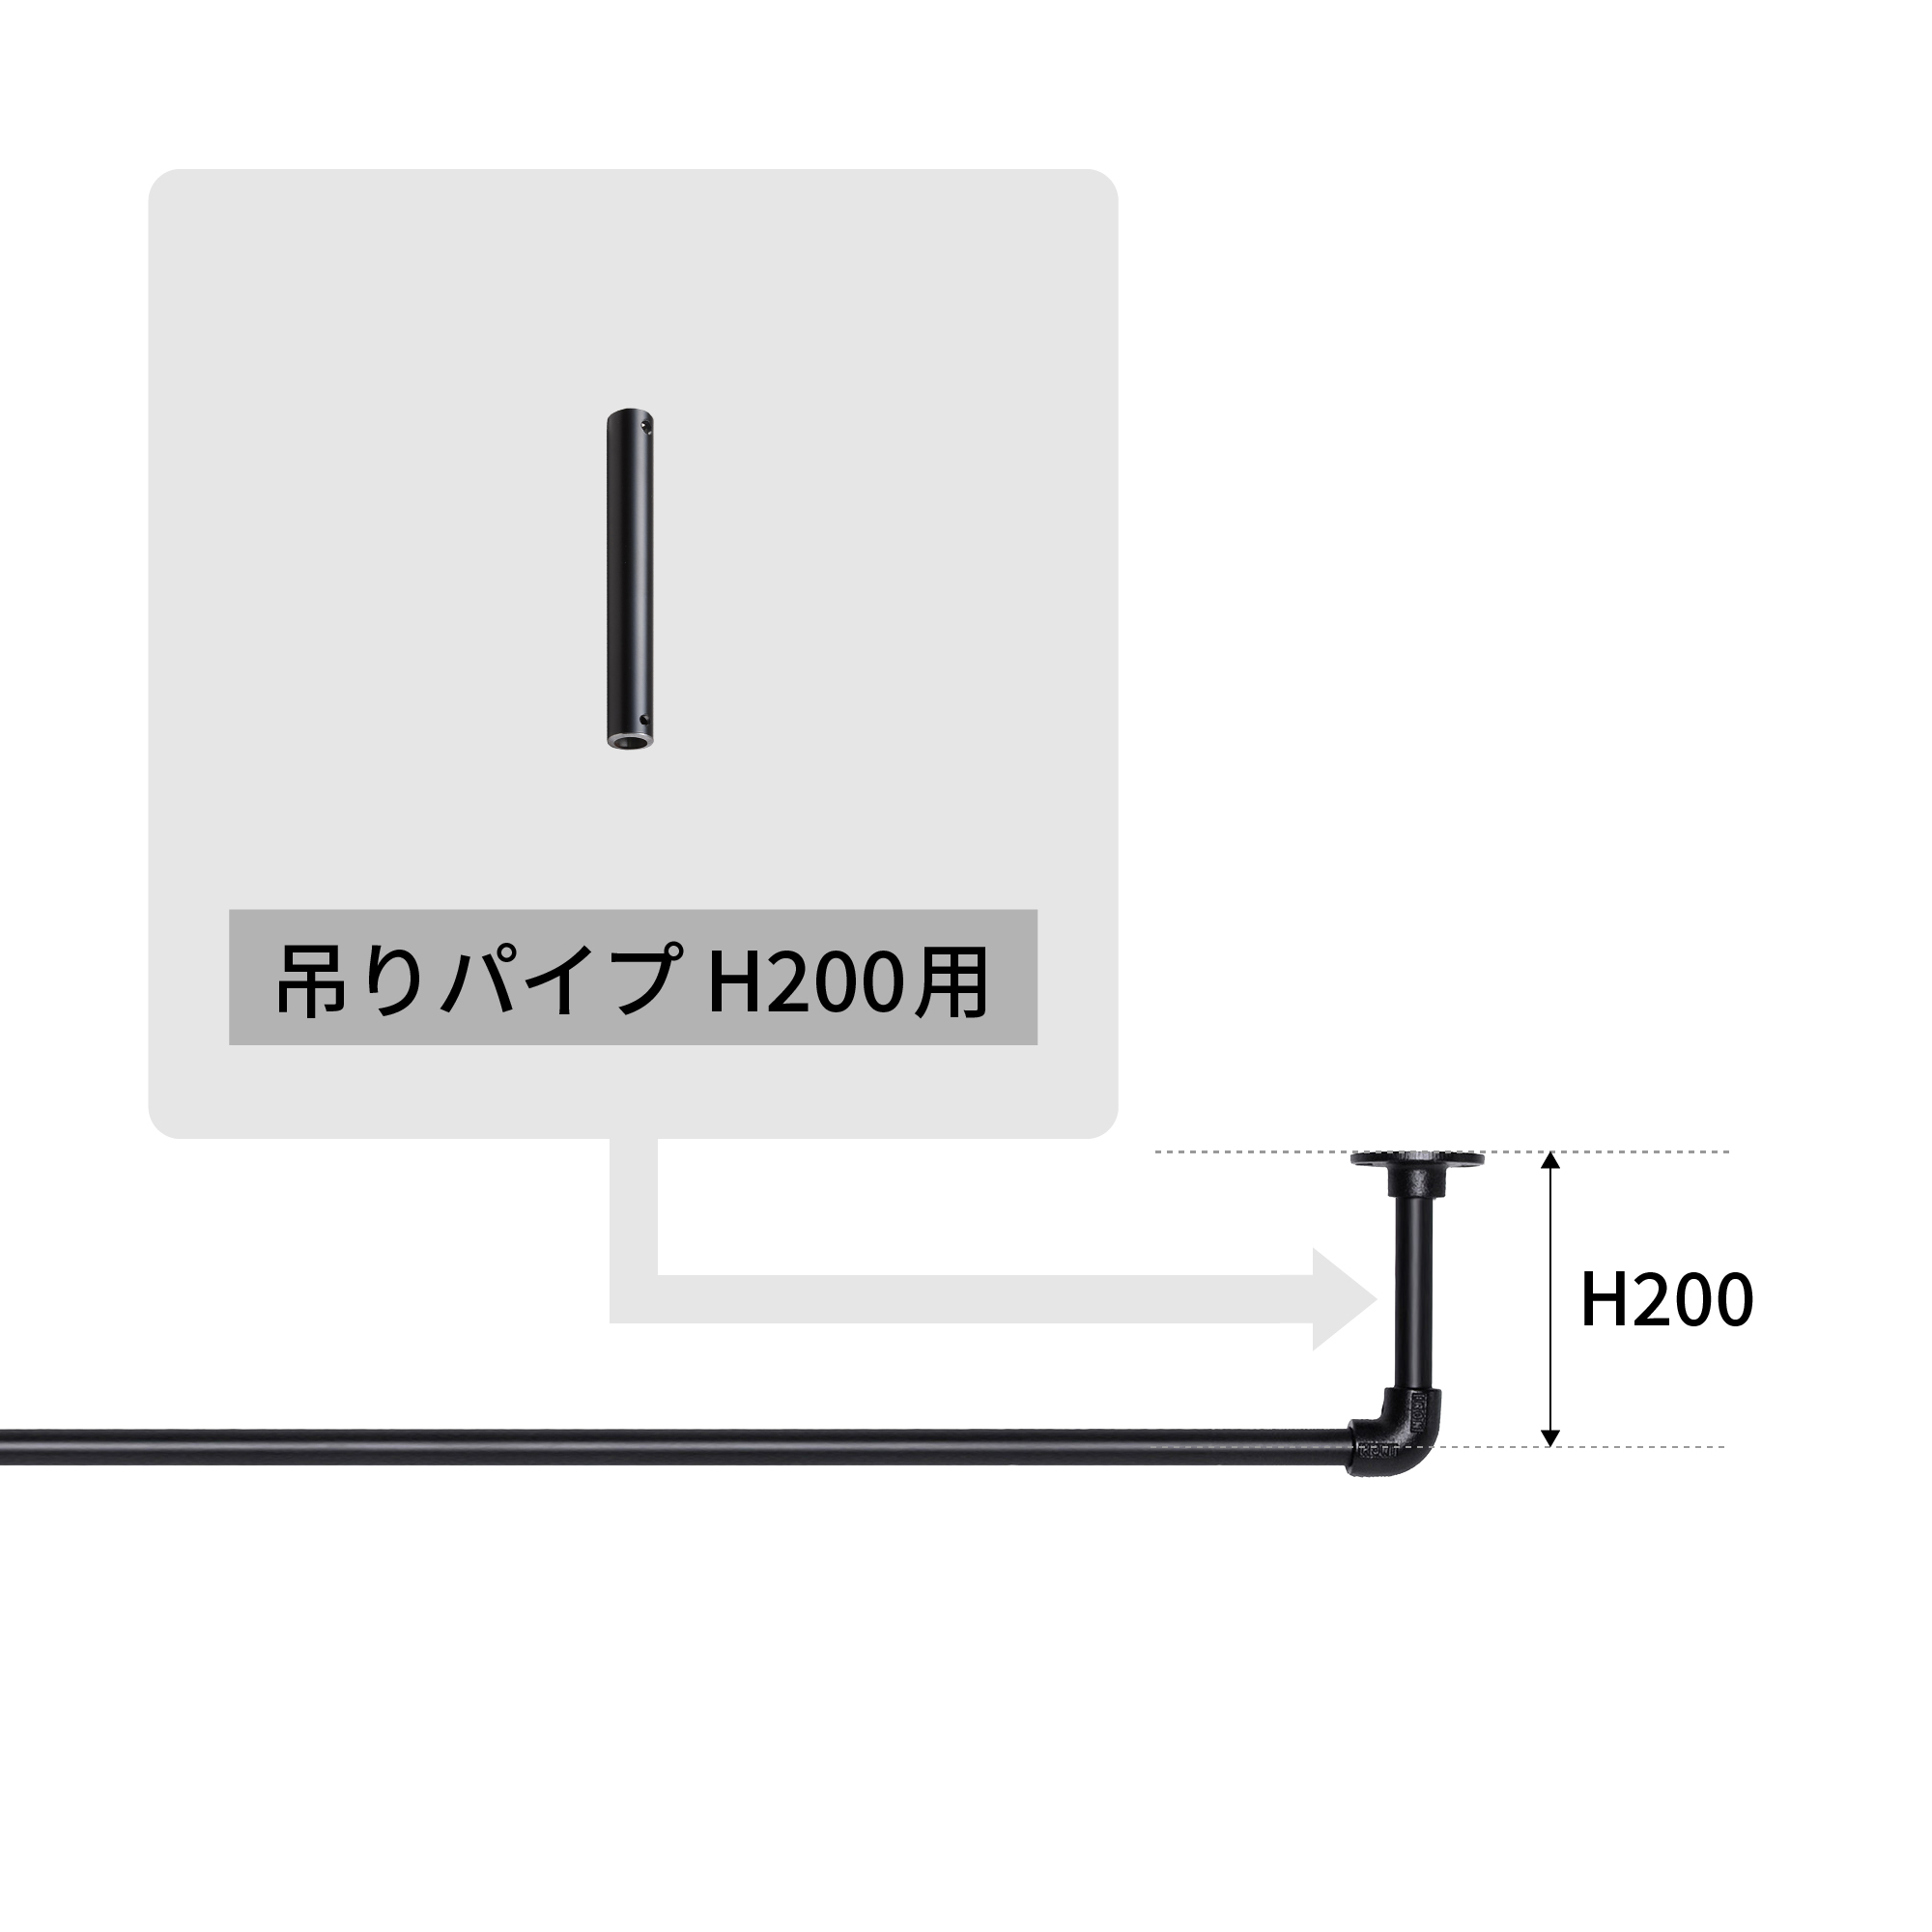 アイアンハンガーパイプ 吊りパイプ H200用 ホワイト PS-HB008-44-G141